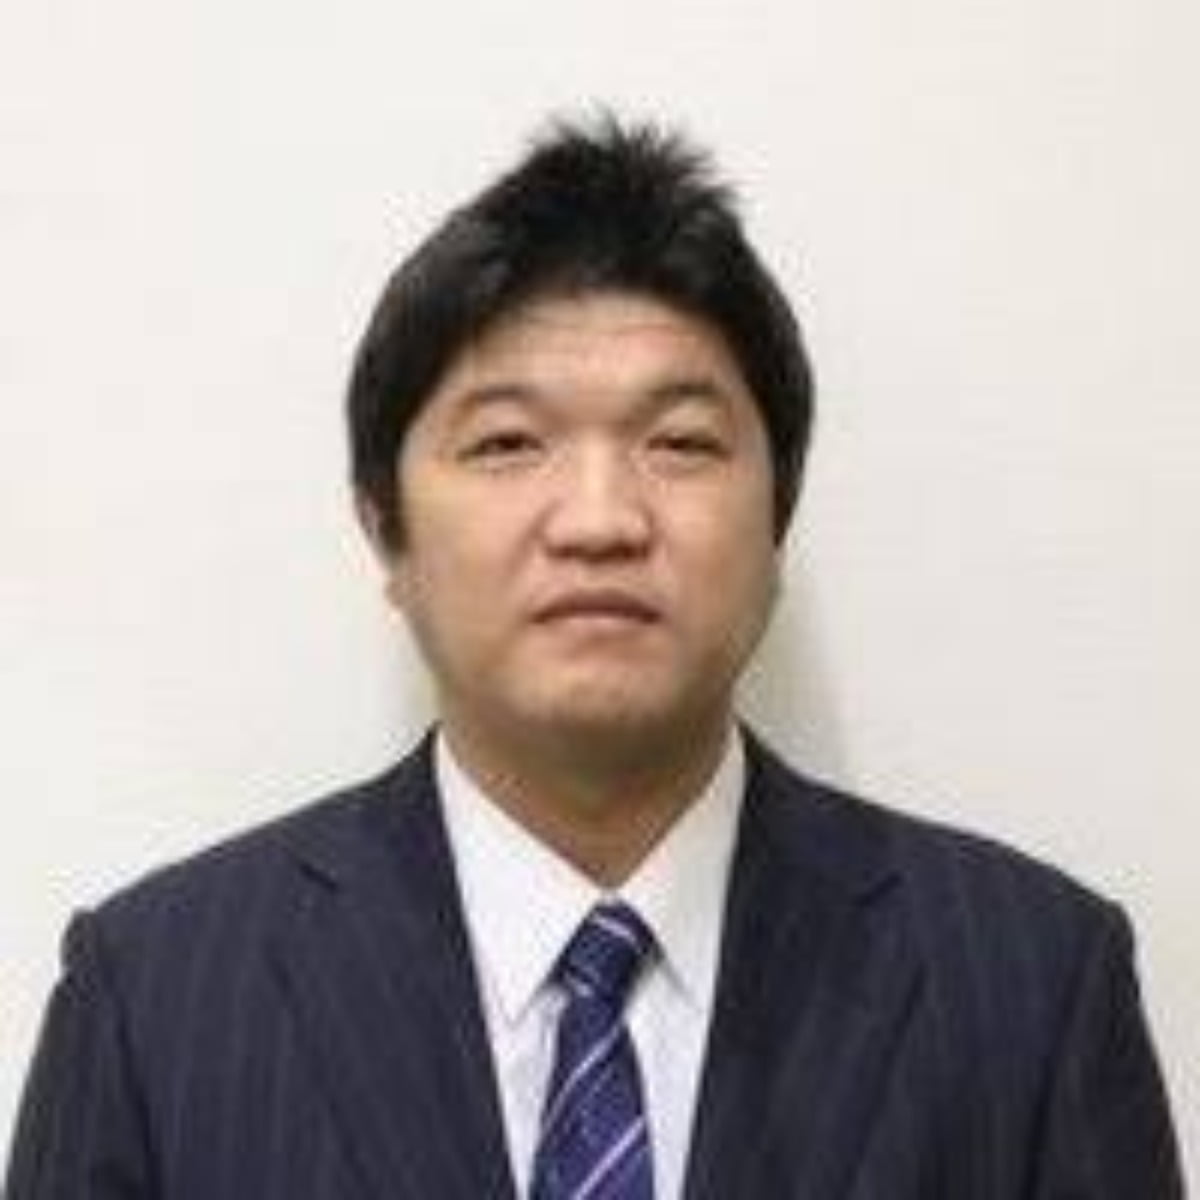 한국 혐오발언을 일삼은 일본 가가와현 간온지시의 기시우에 마사노리(44) 시의원/사진 출처=기시우에 마사노리 SNS